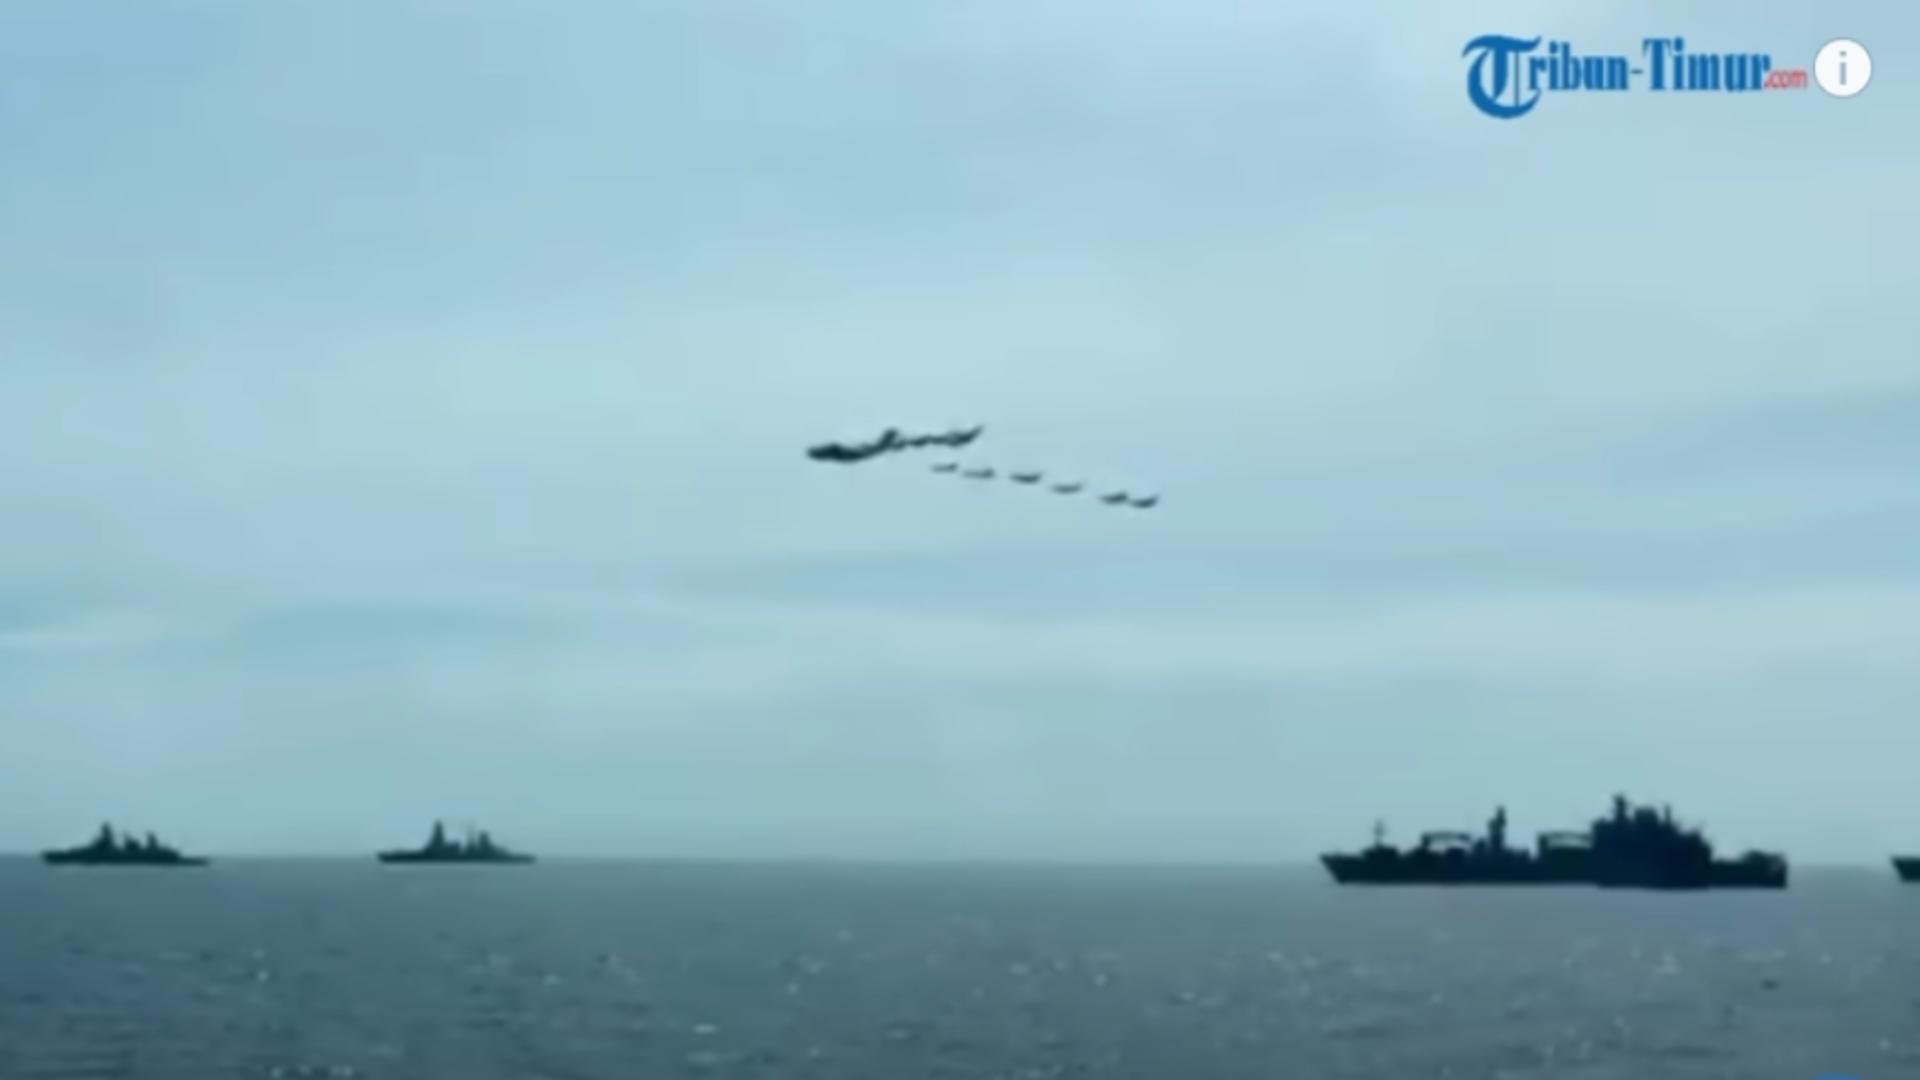 Nave și avioane rusești/ Captură video Tribun Timur